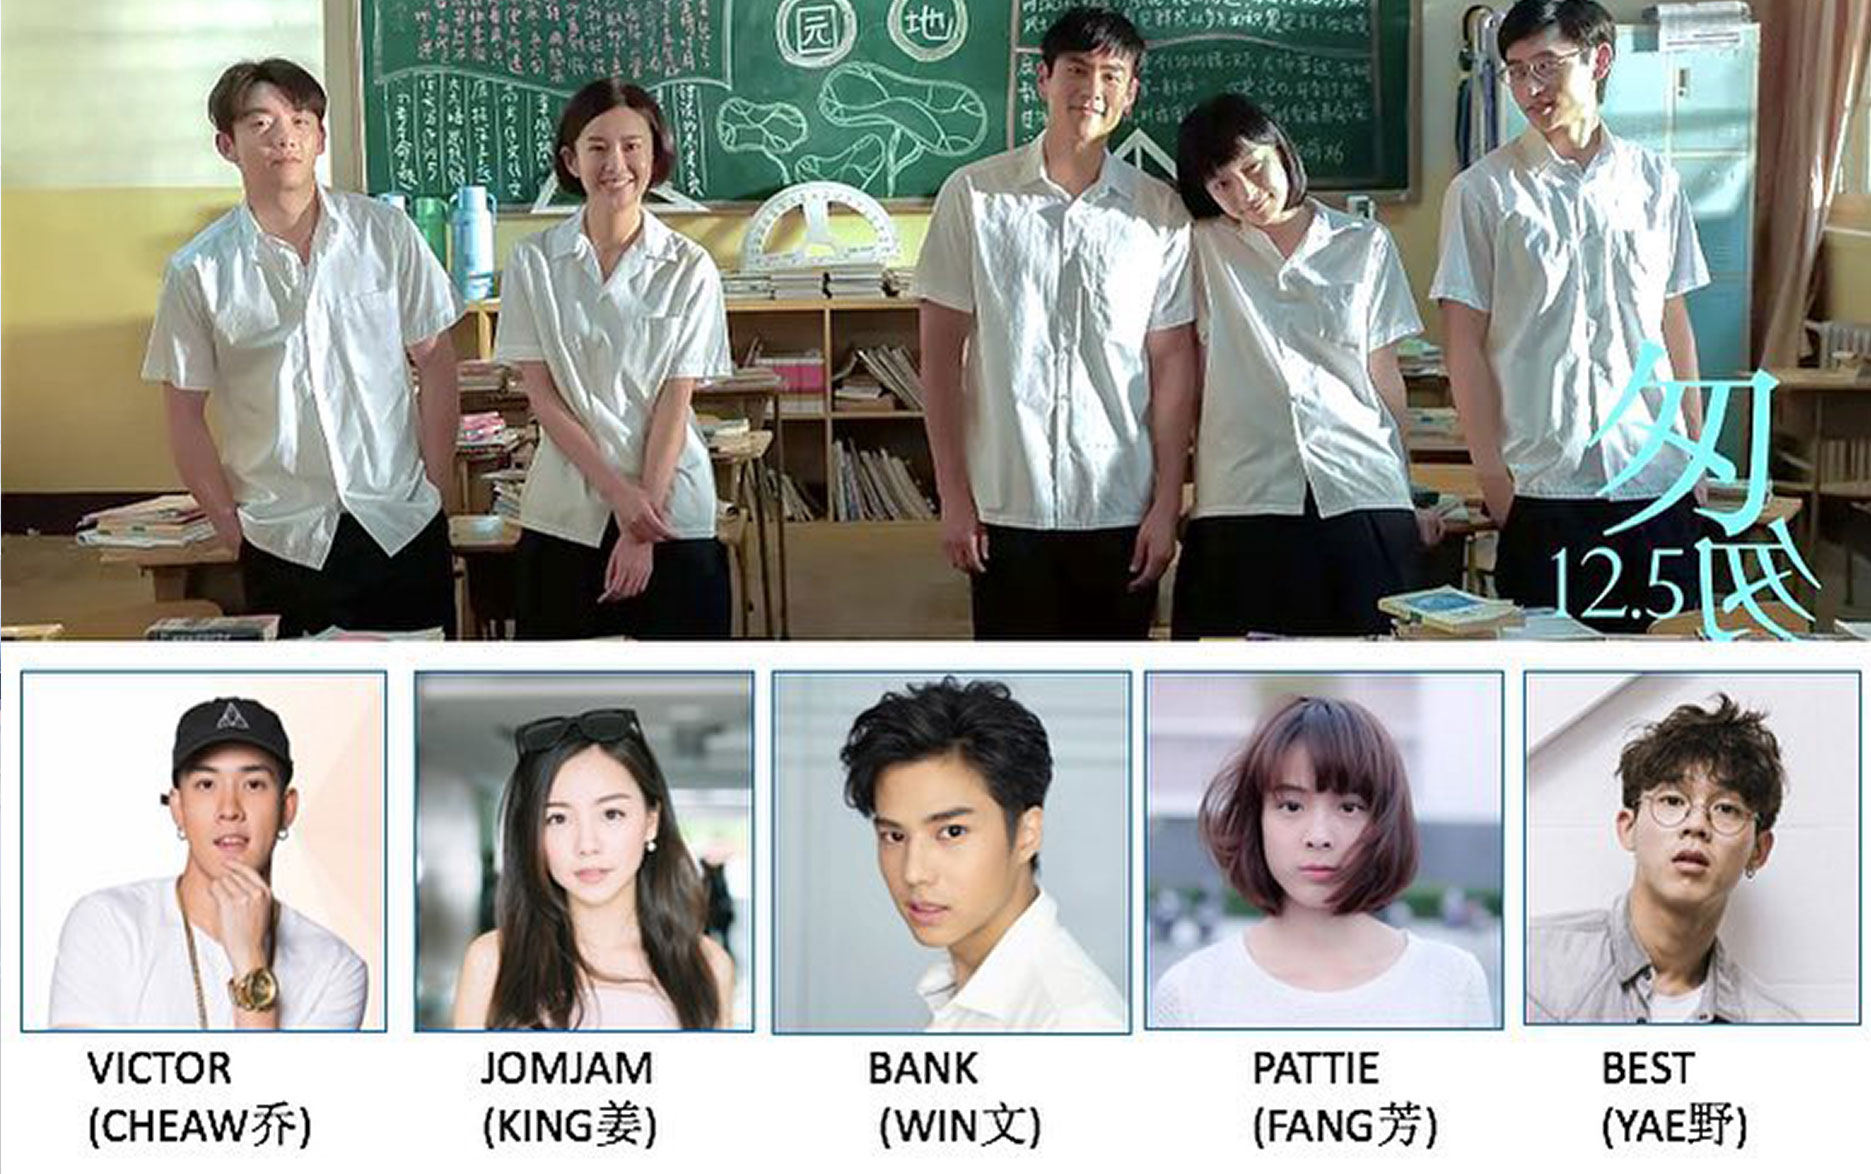 Phim Trung Quốc 'Năm tháng vội vã' từng gây sốt giới trẻ năm 2014 nay đã có  phiên bản Thái Lan